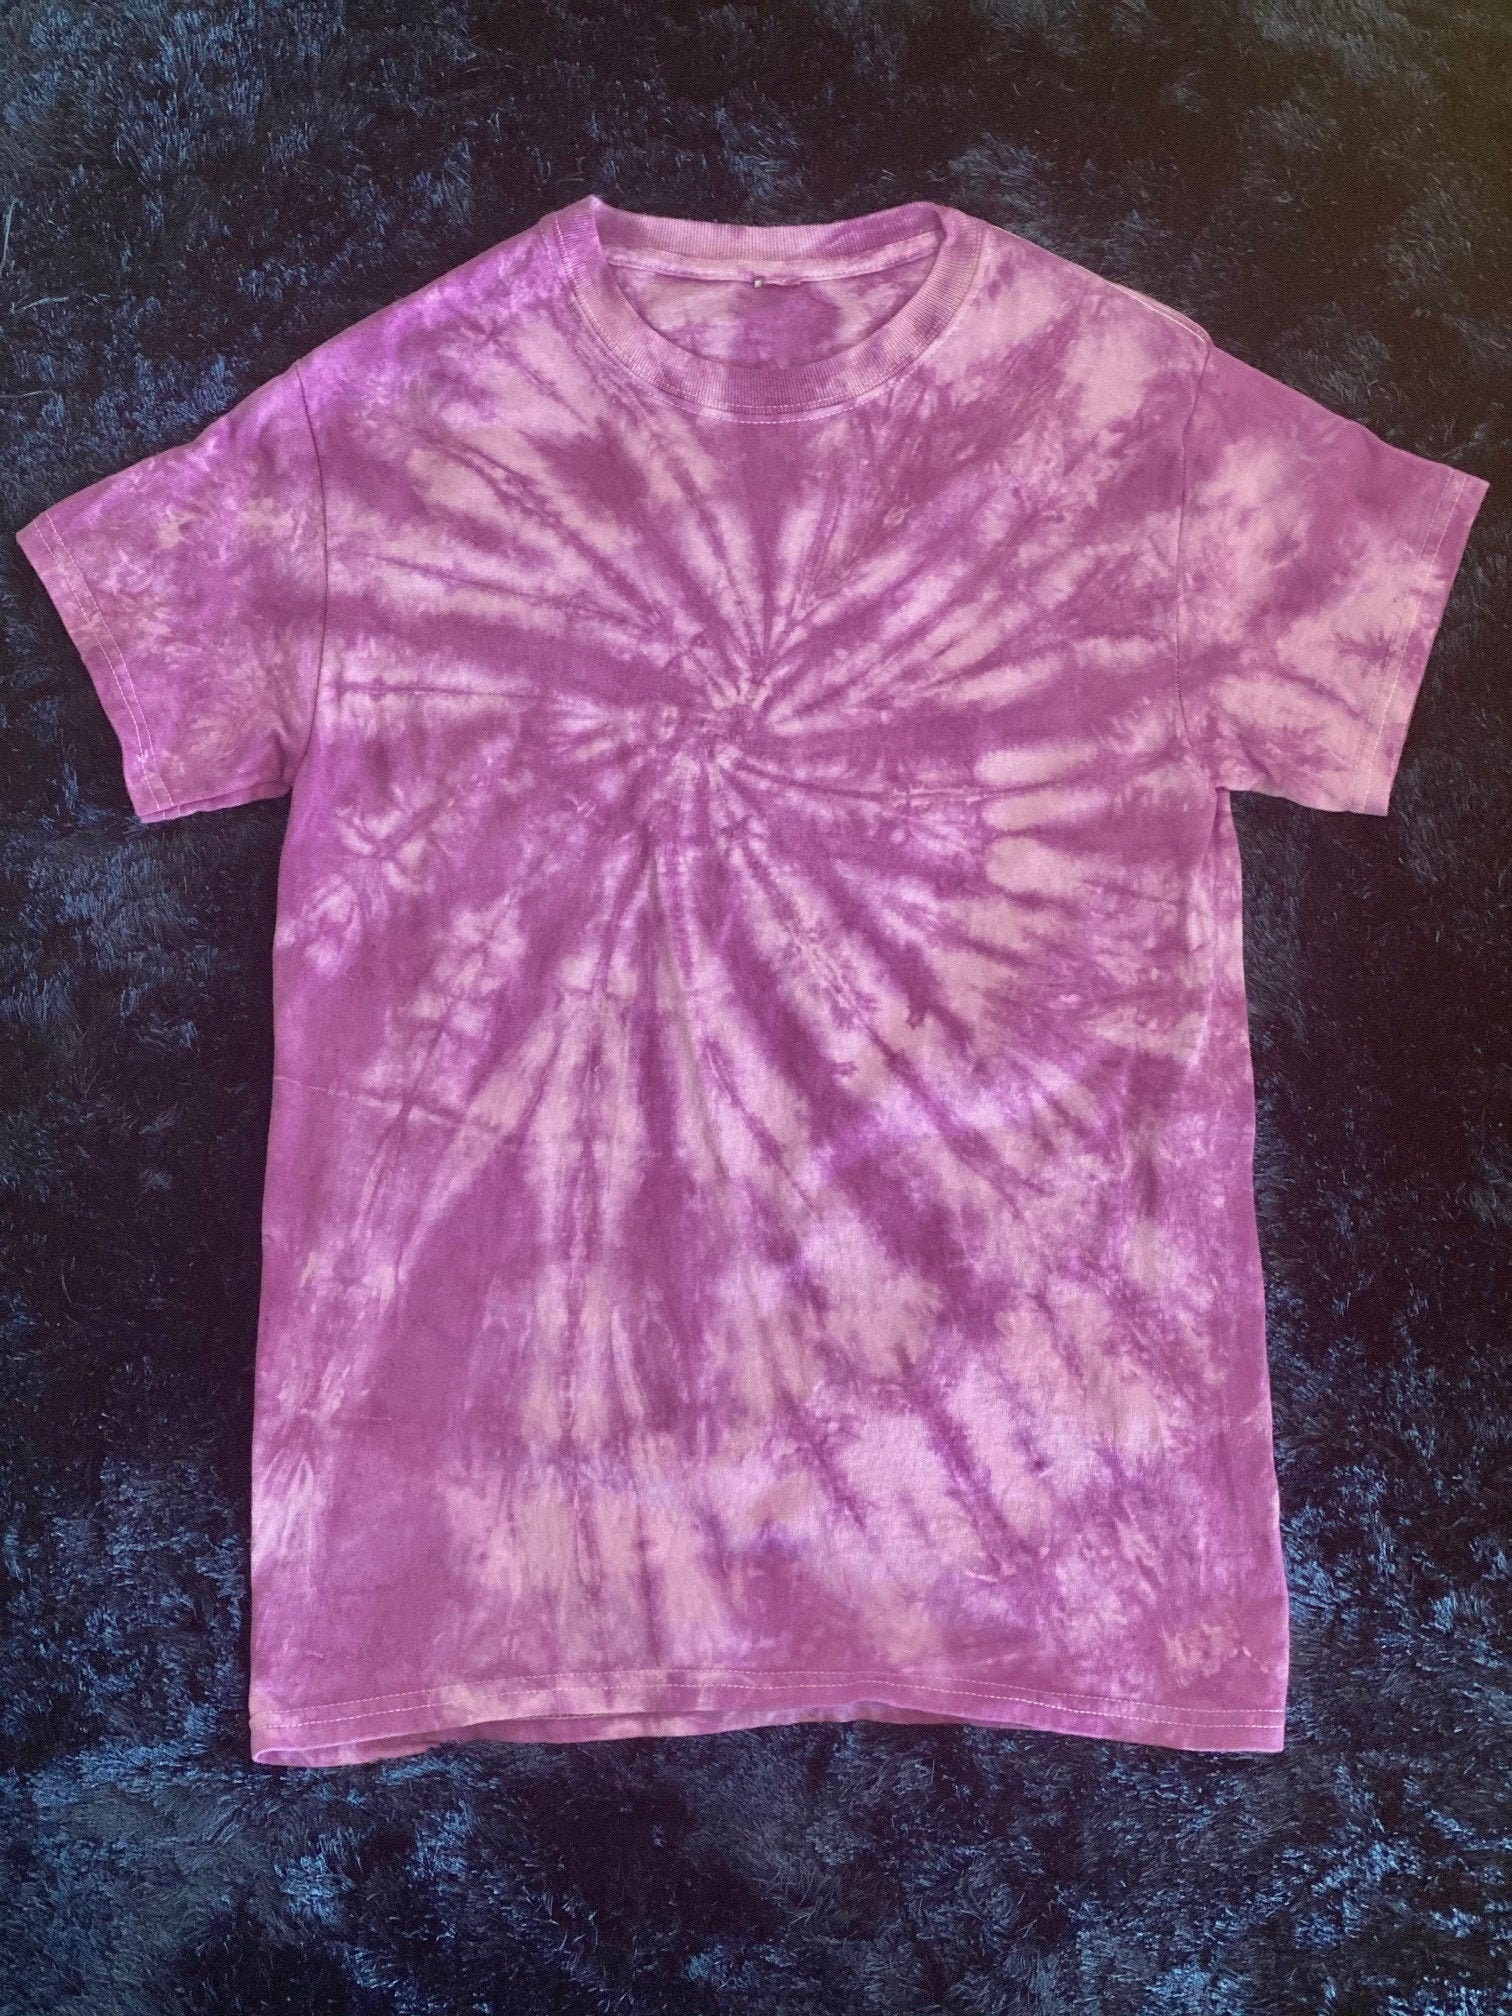 Purple Tie Dye T-Shirt | Etsy